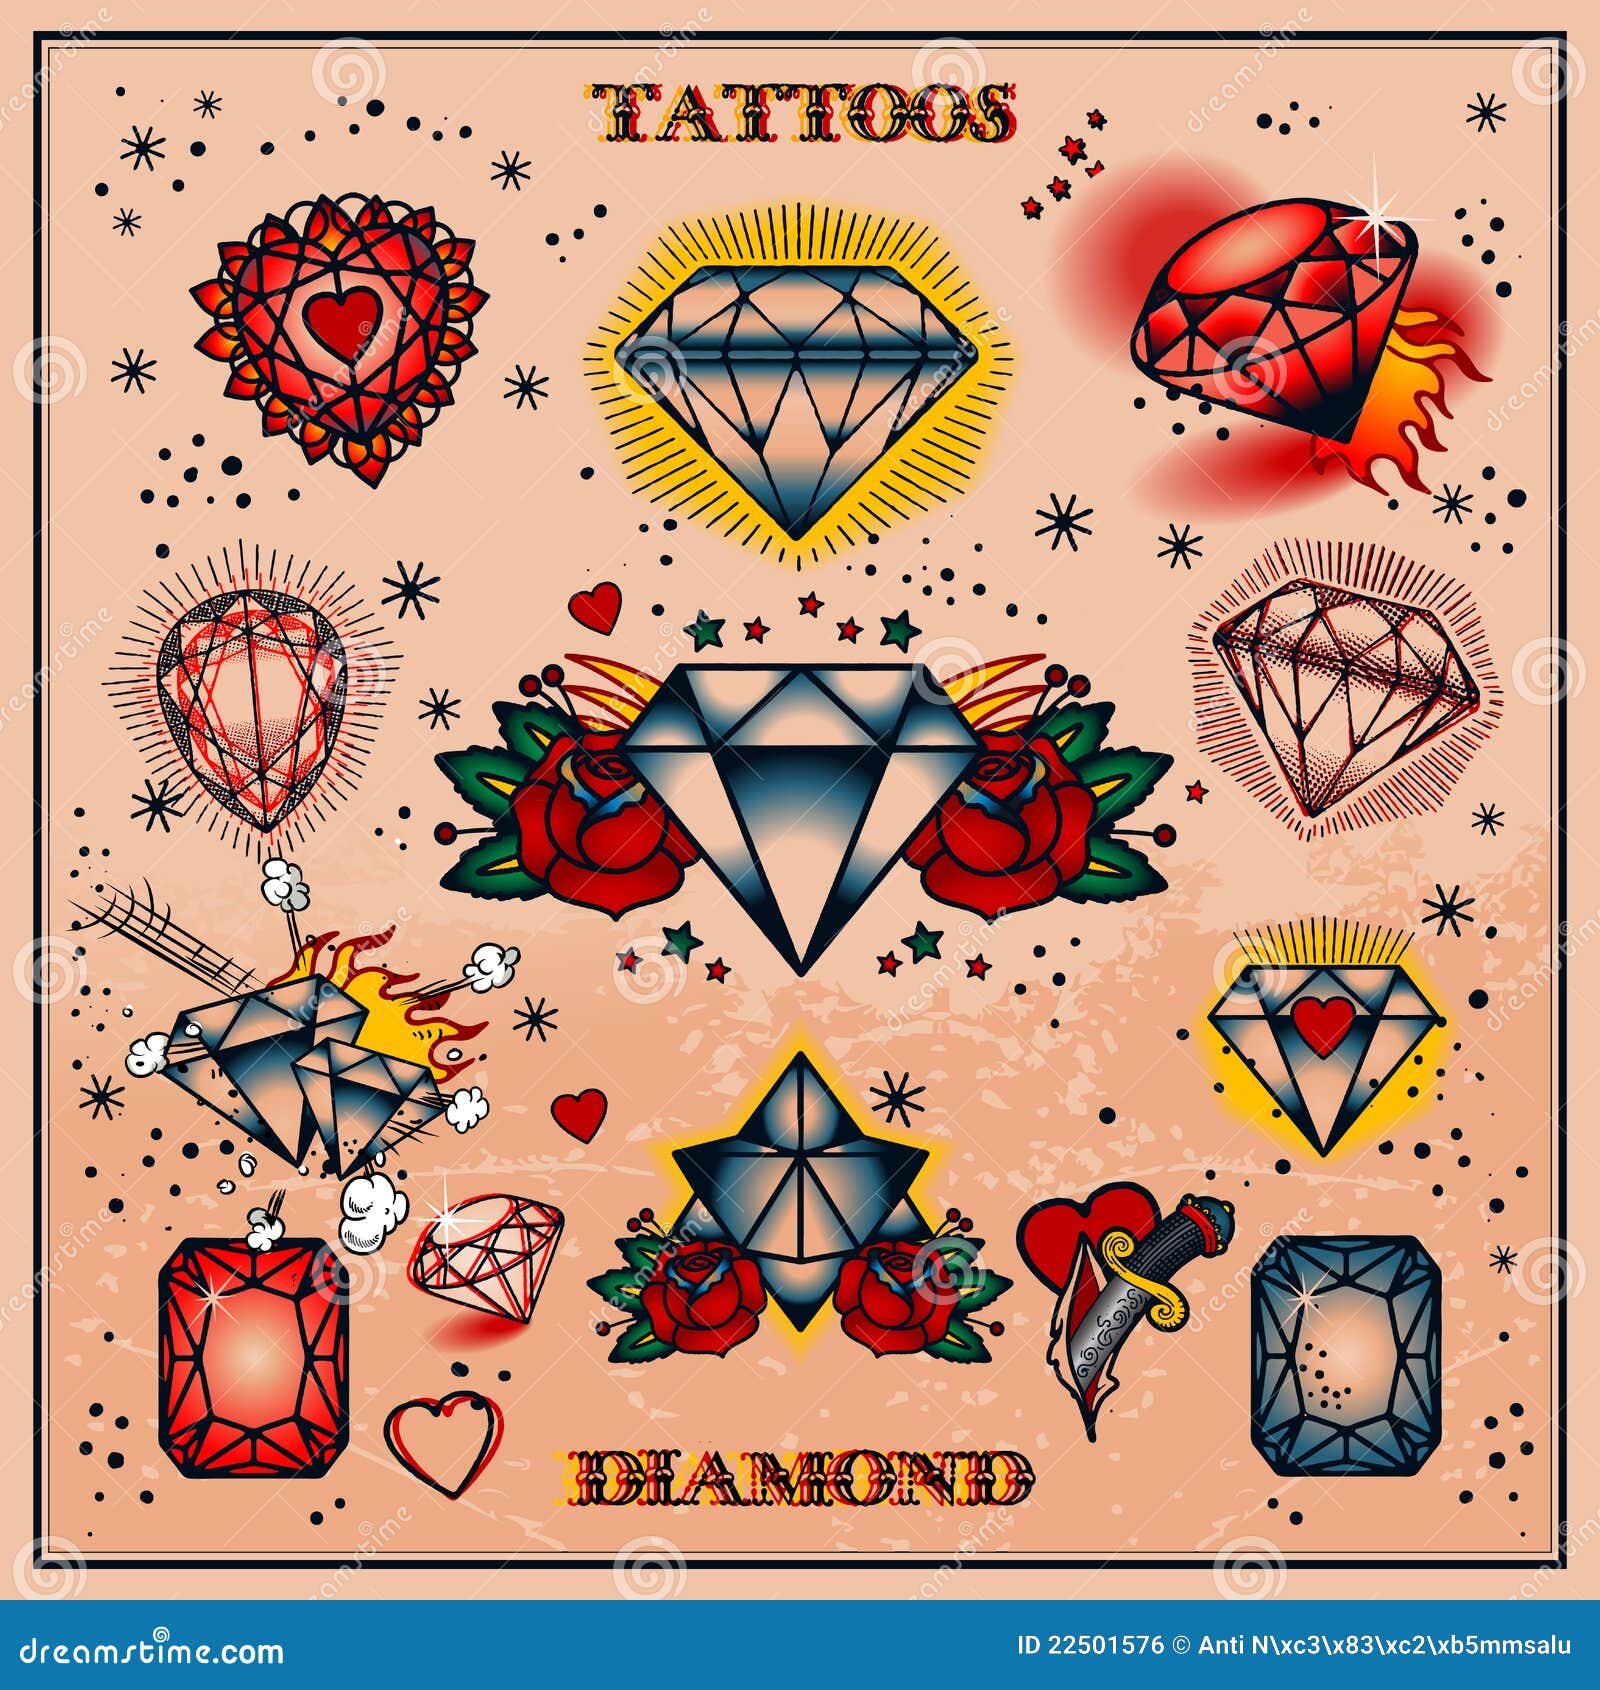 40+ Dazzling Gemstone Tattoos You'll Love - The XO Factor | Ruby tattoo,  Gem tattoo, Heart tattoo